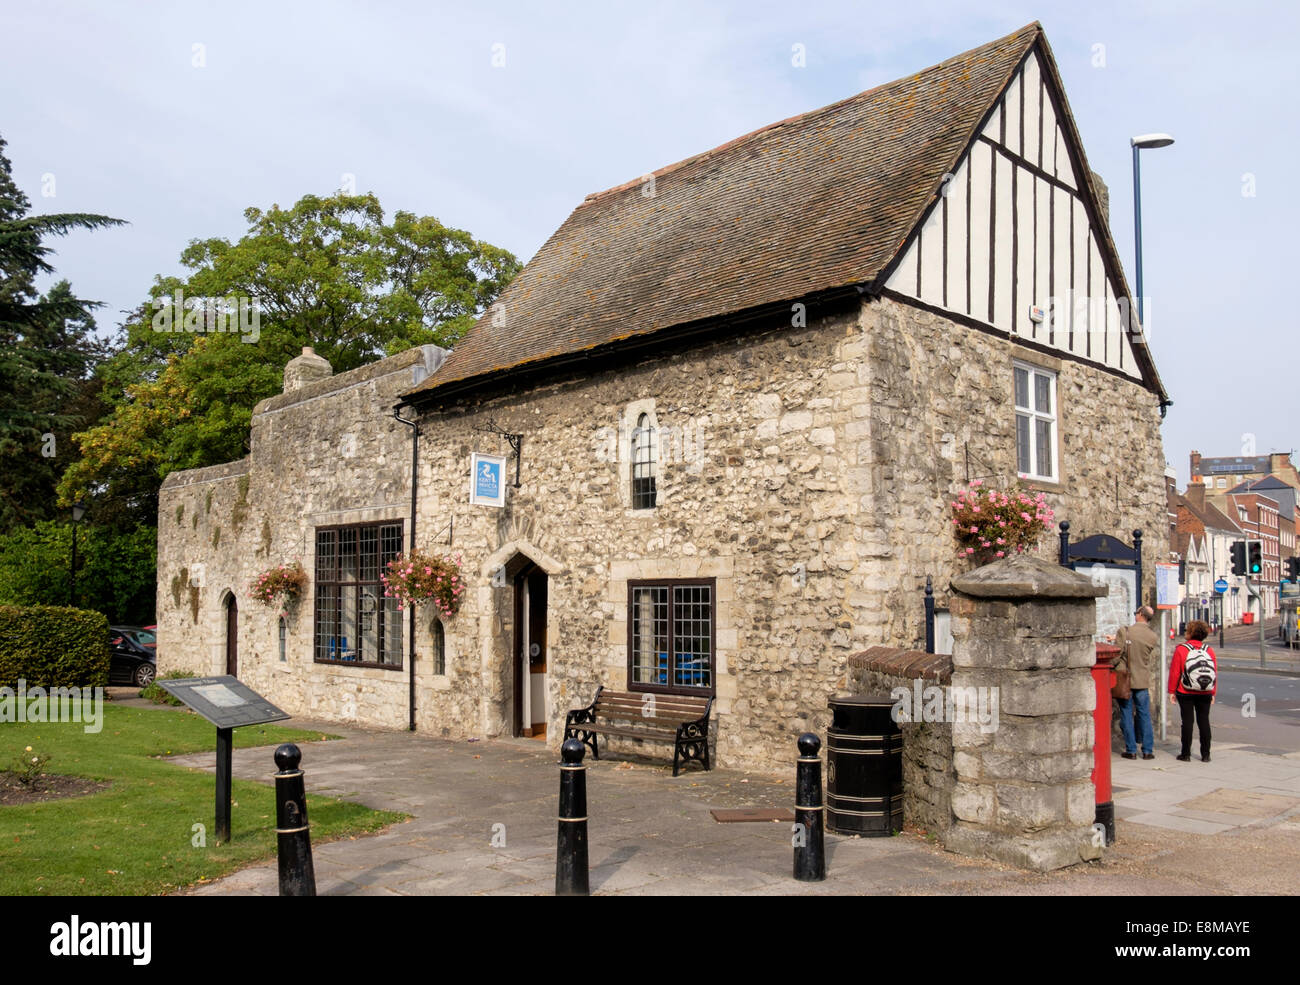 Kent Invicta Chamber of Commerce in Tor Haus, Palast des Erzbischofs, Mill Street, Maidstone, Kent, England, Vereinigtes Königreich, Großbritannien Stockfoto